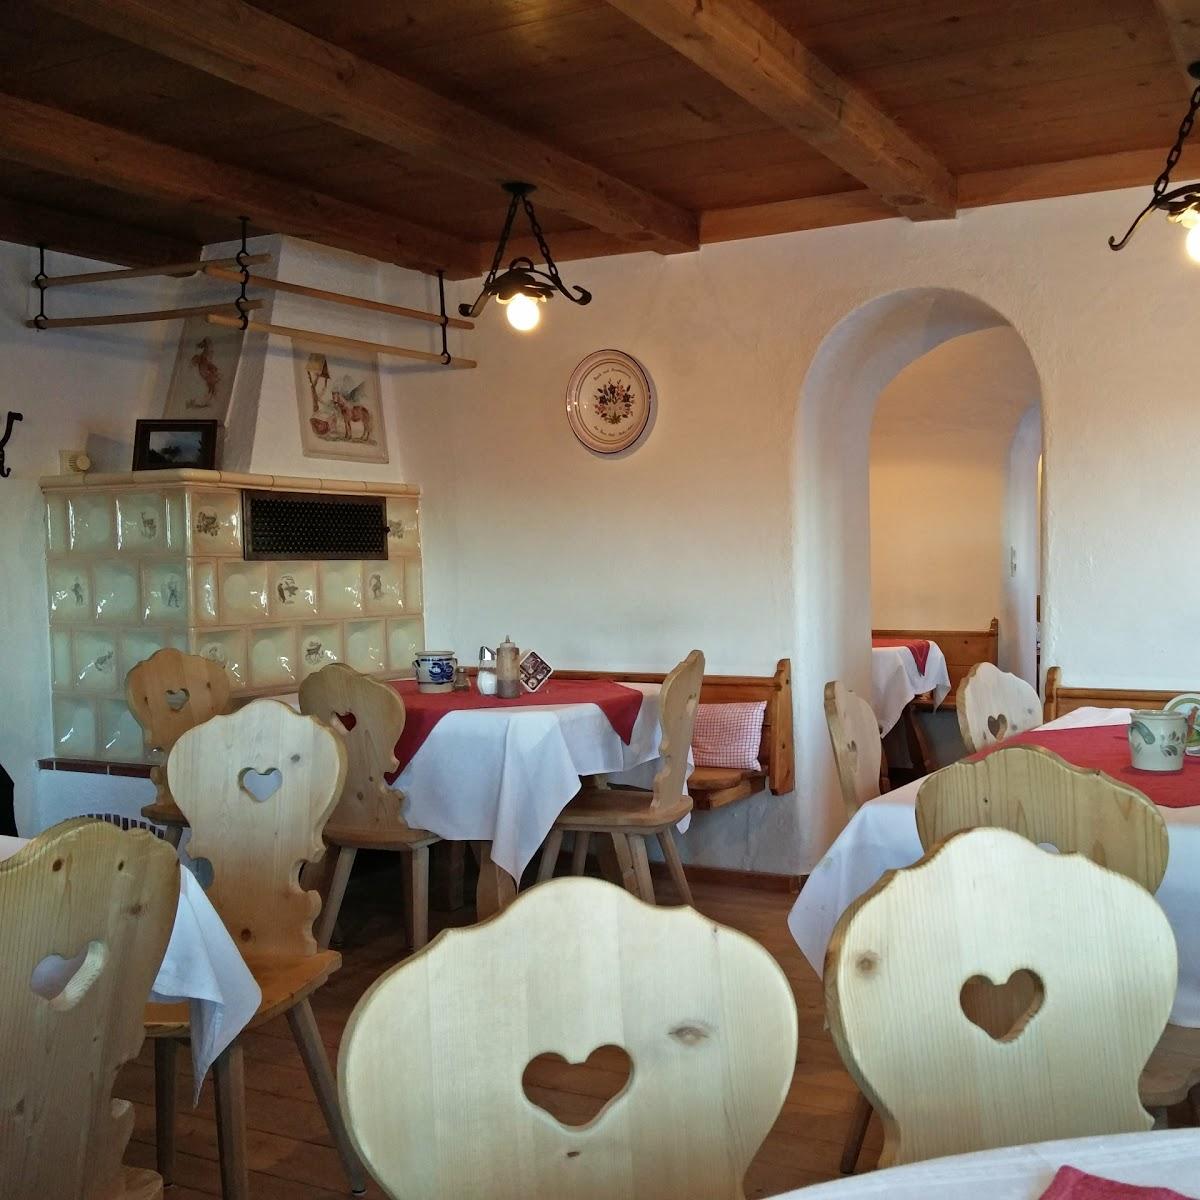 Restaurant "Berggasthof Hohe Asten" in Flintsbach am Inn